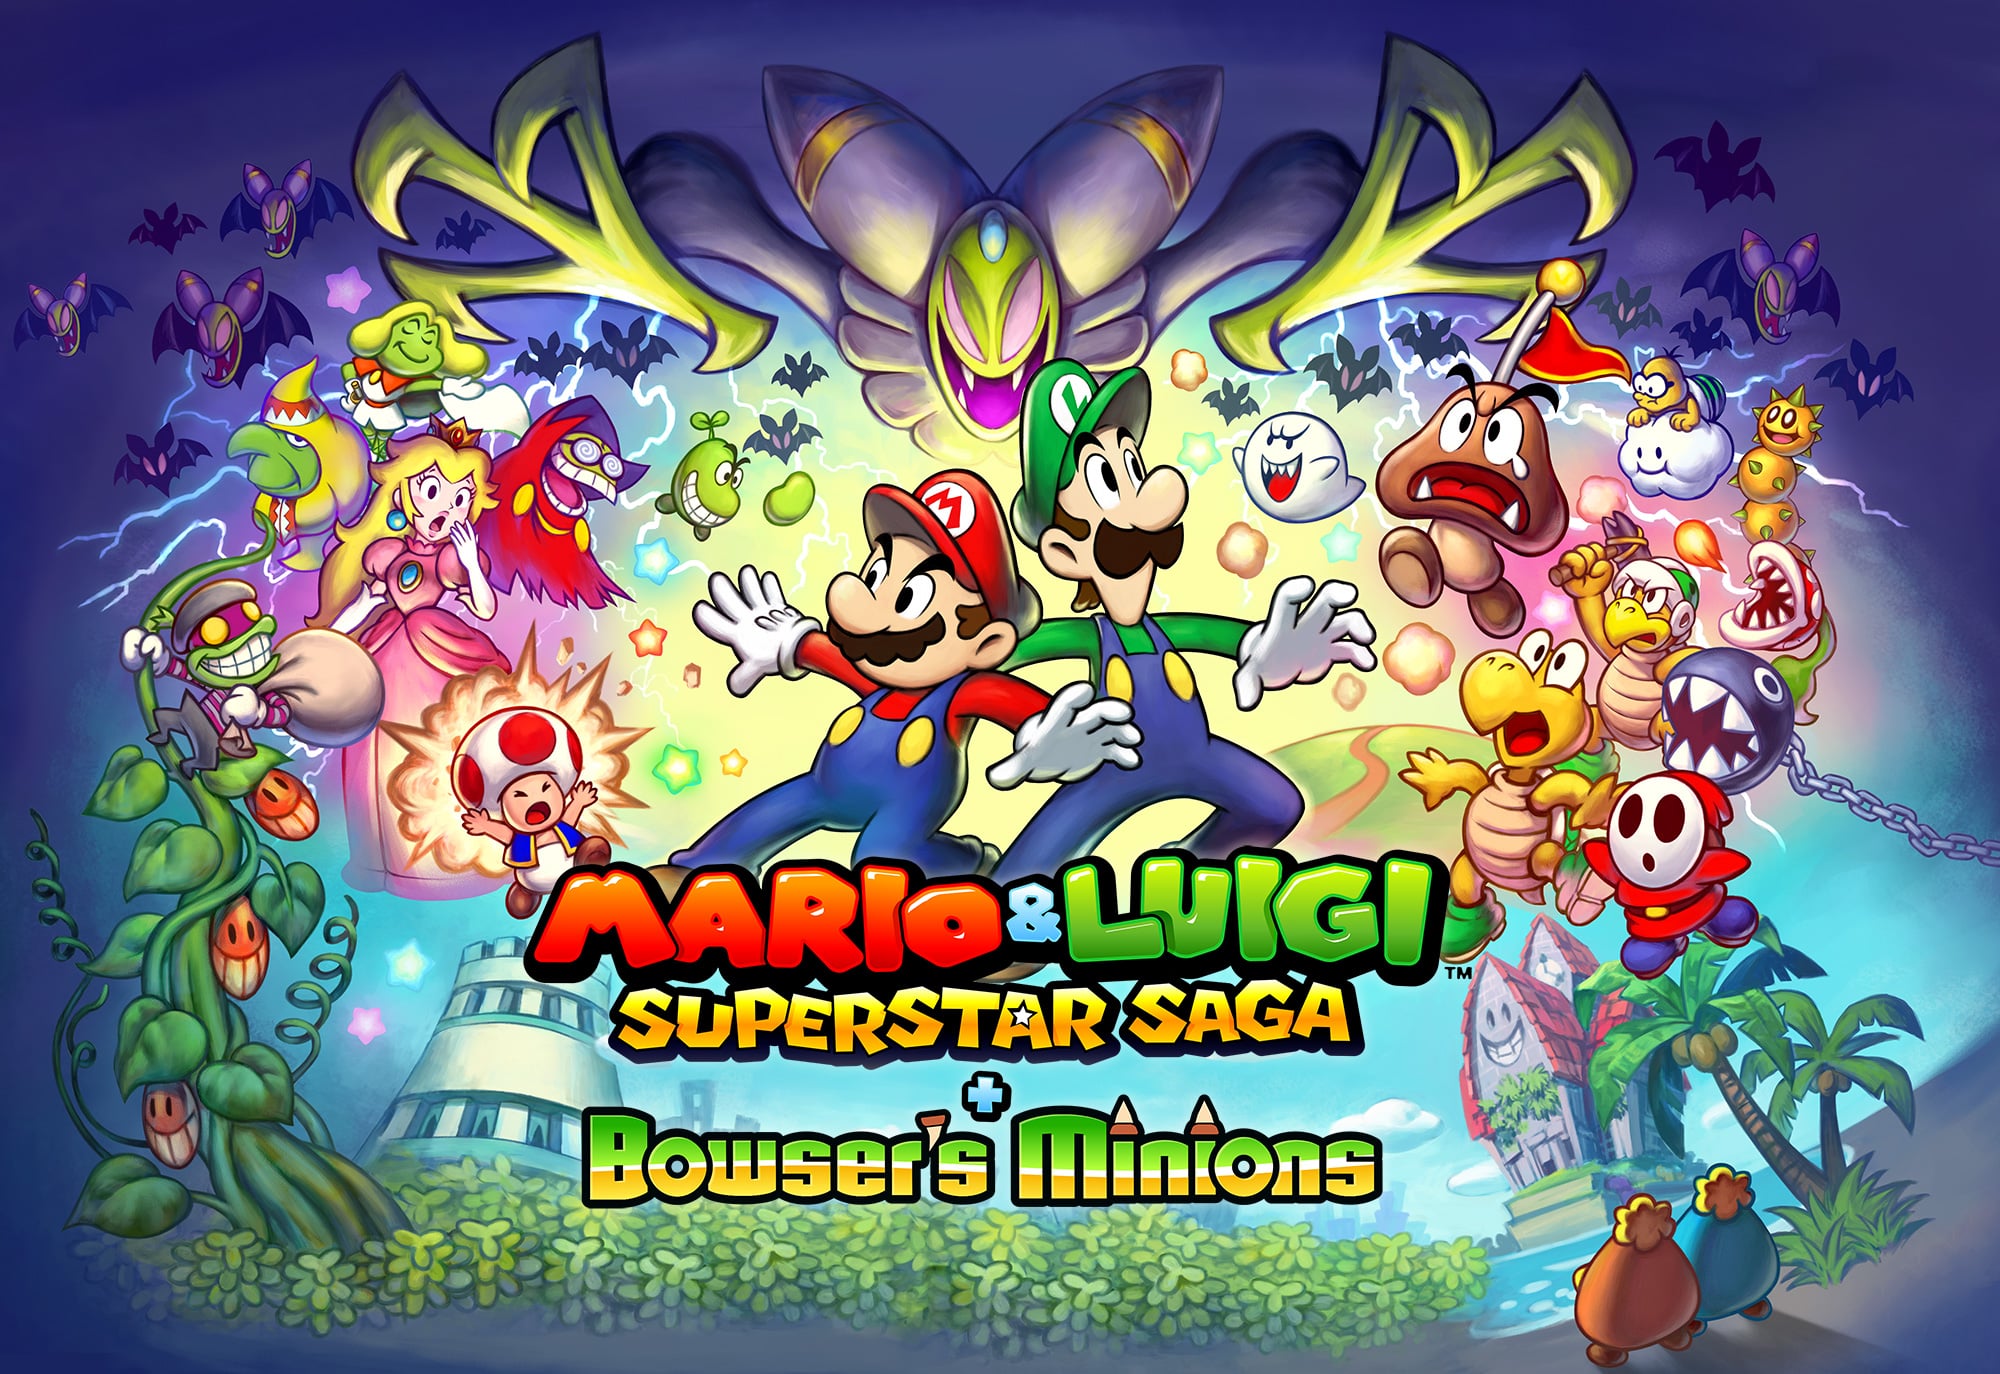 Mario and luigi saga. Mario and Luigi Superstar Saga. Mario and Luigi RPG. Mario & Luigi: Superstar Saga + Bowser's Minions. Mario and Luigi super Star Saga 3ds.